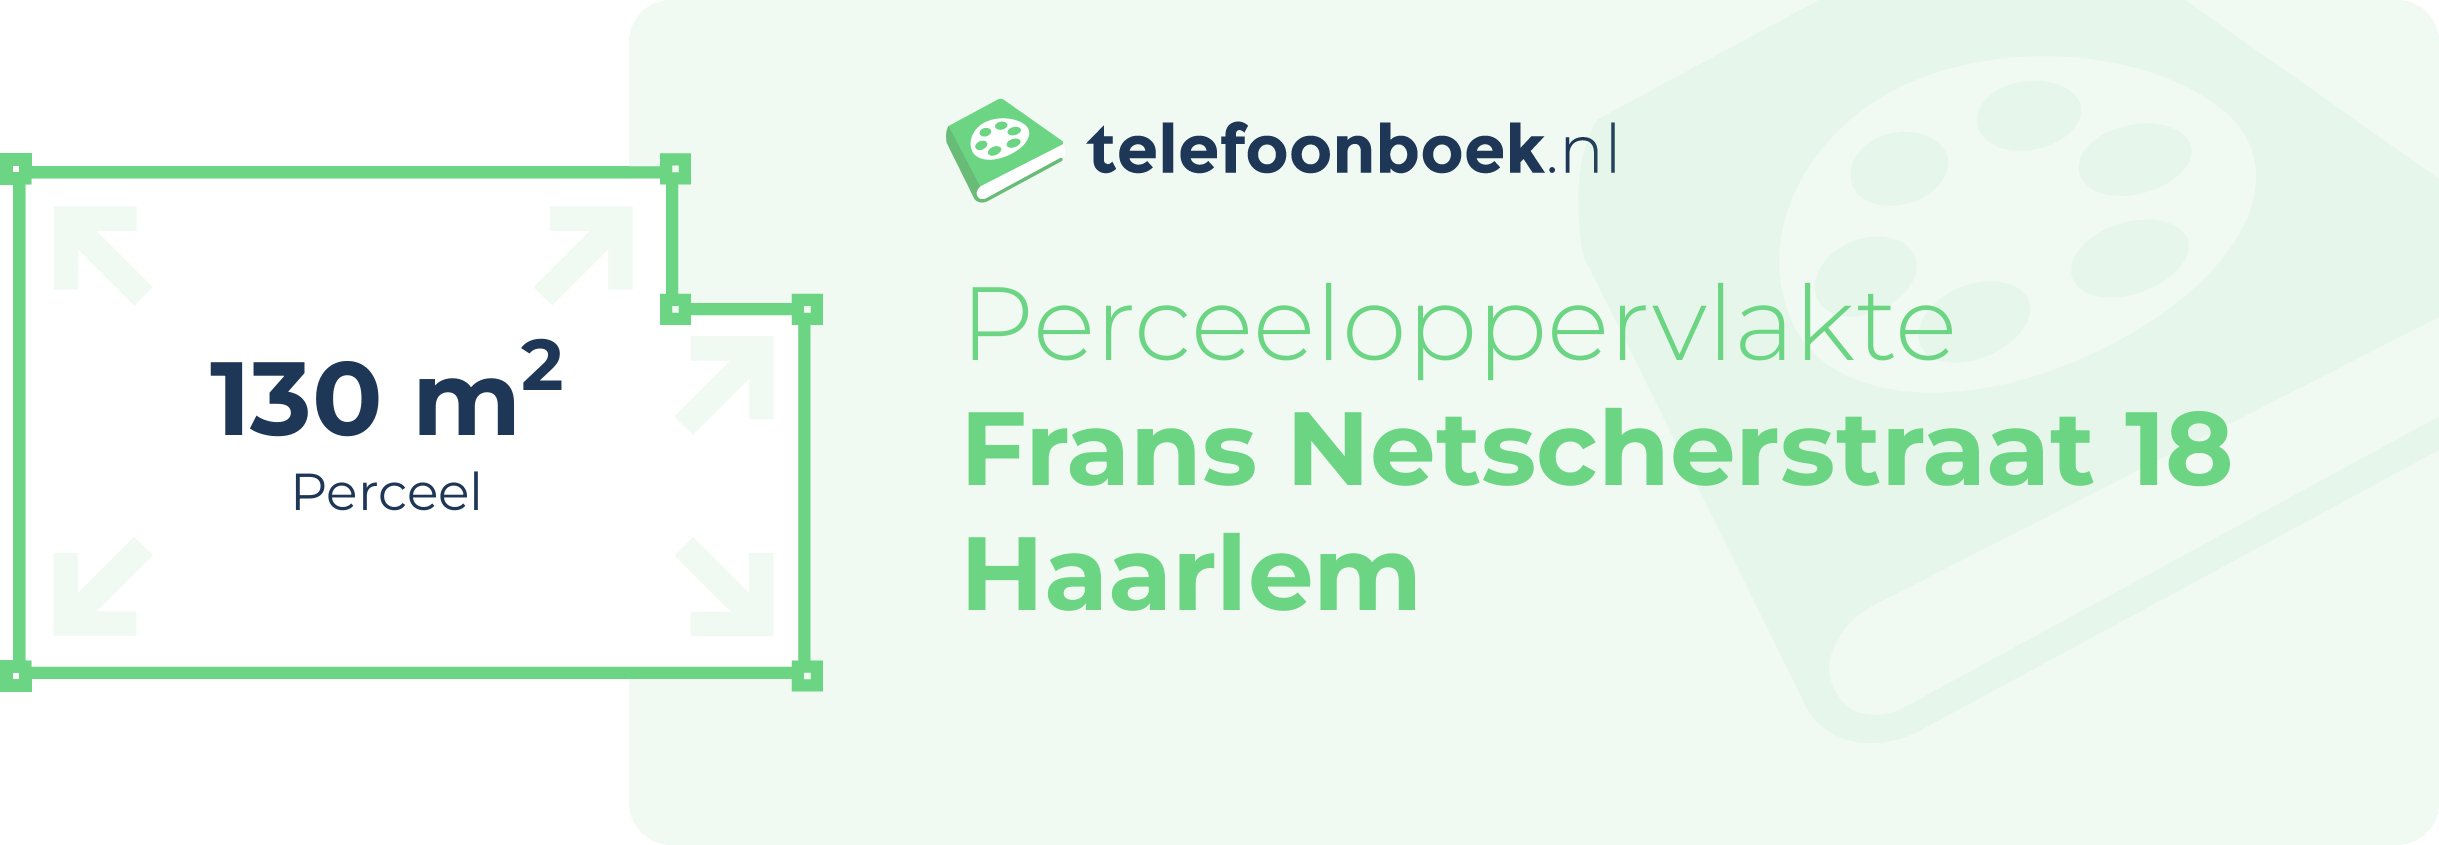 Perceeloppervlakte Frans Netscherstraat 18 Haarlem